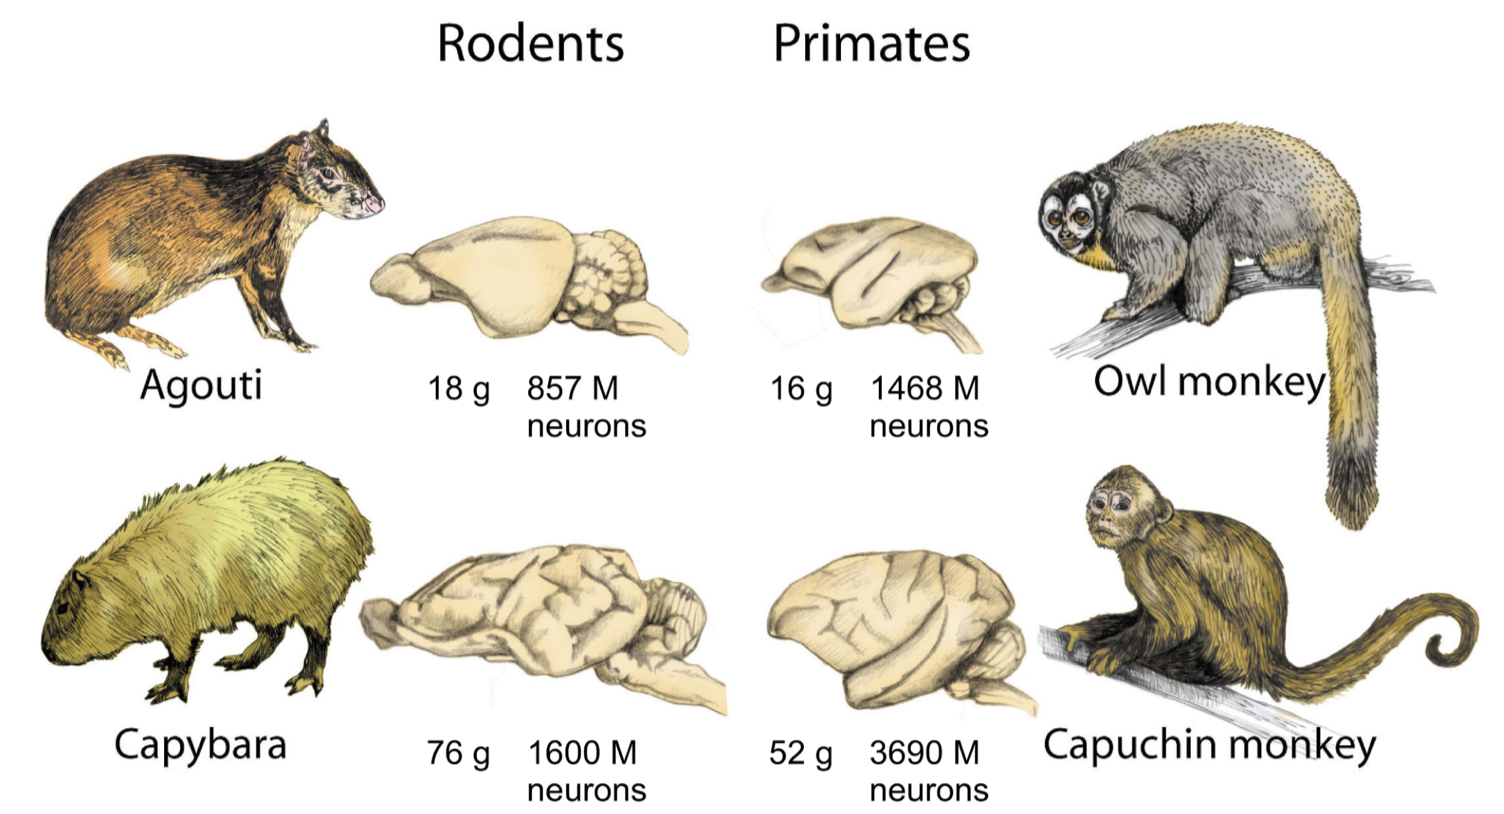 Comparaison de la taille du cerveau et du nombre de neurones chez les rongeurs et chez les primates